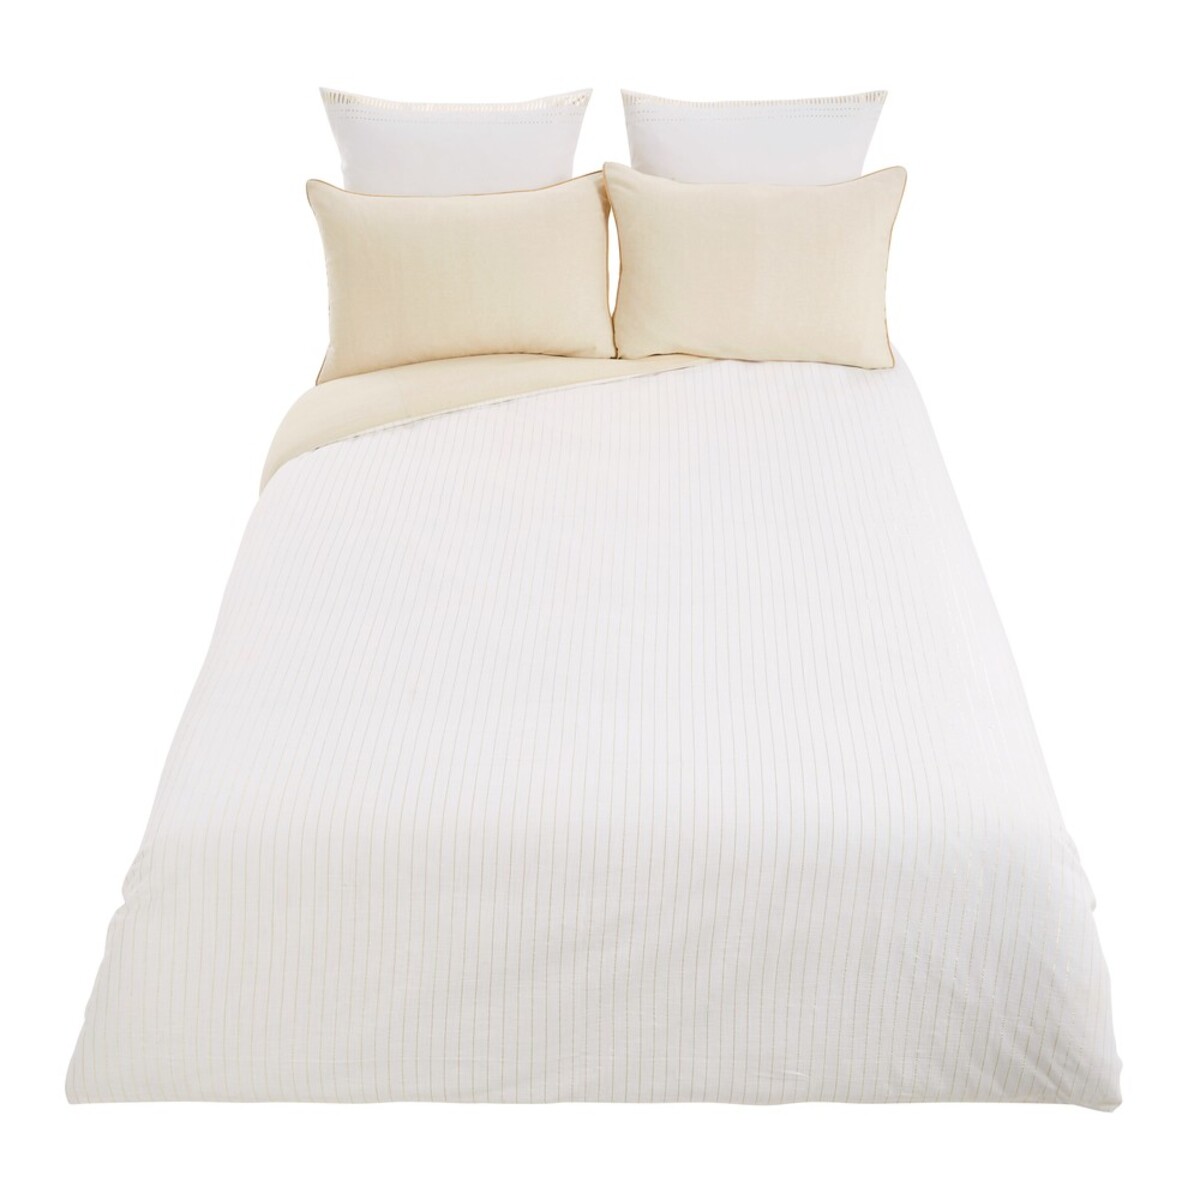 Parure de lit en coton blanc 220x240